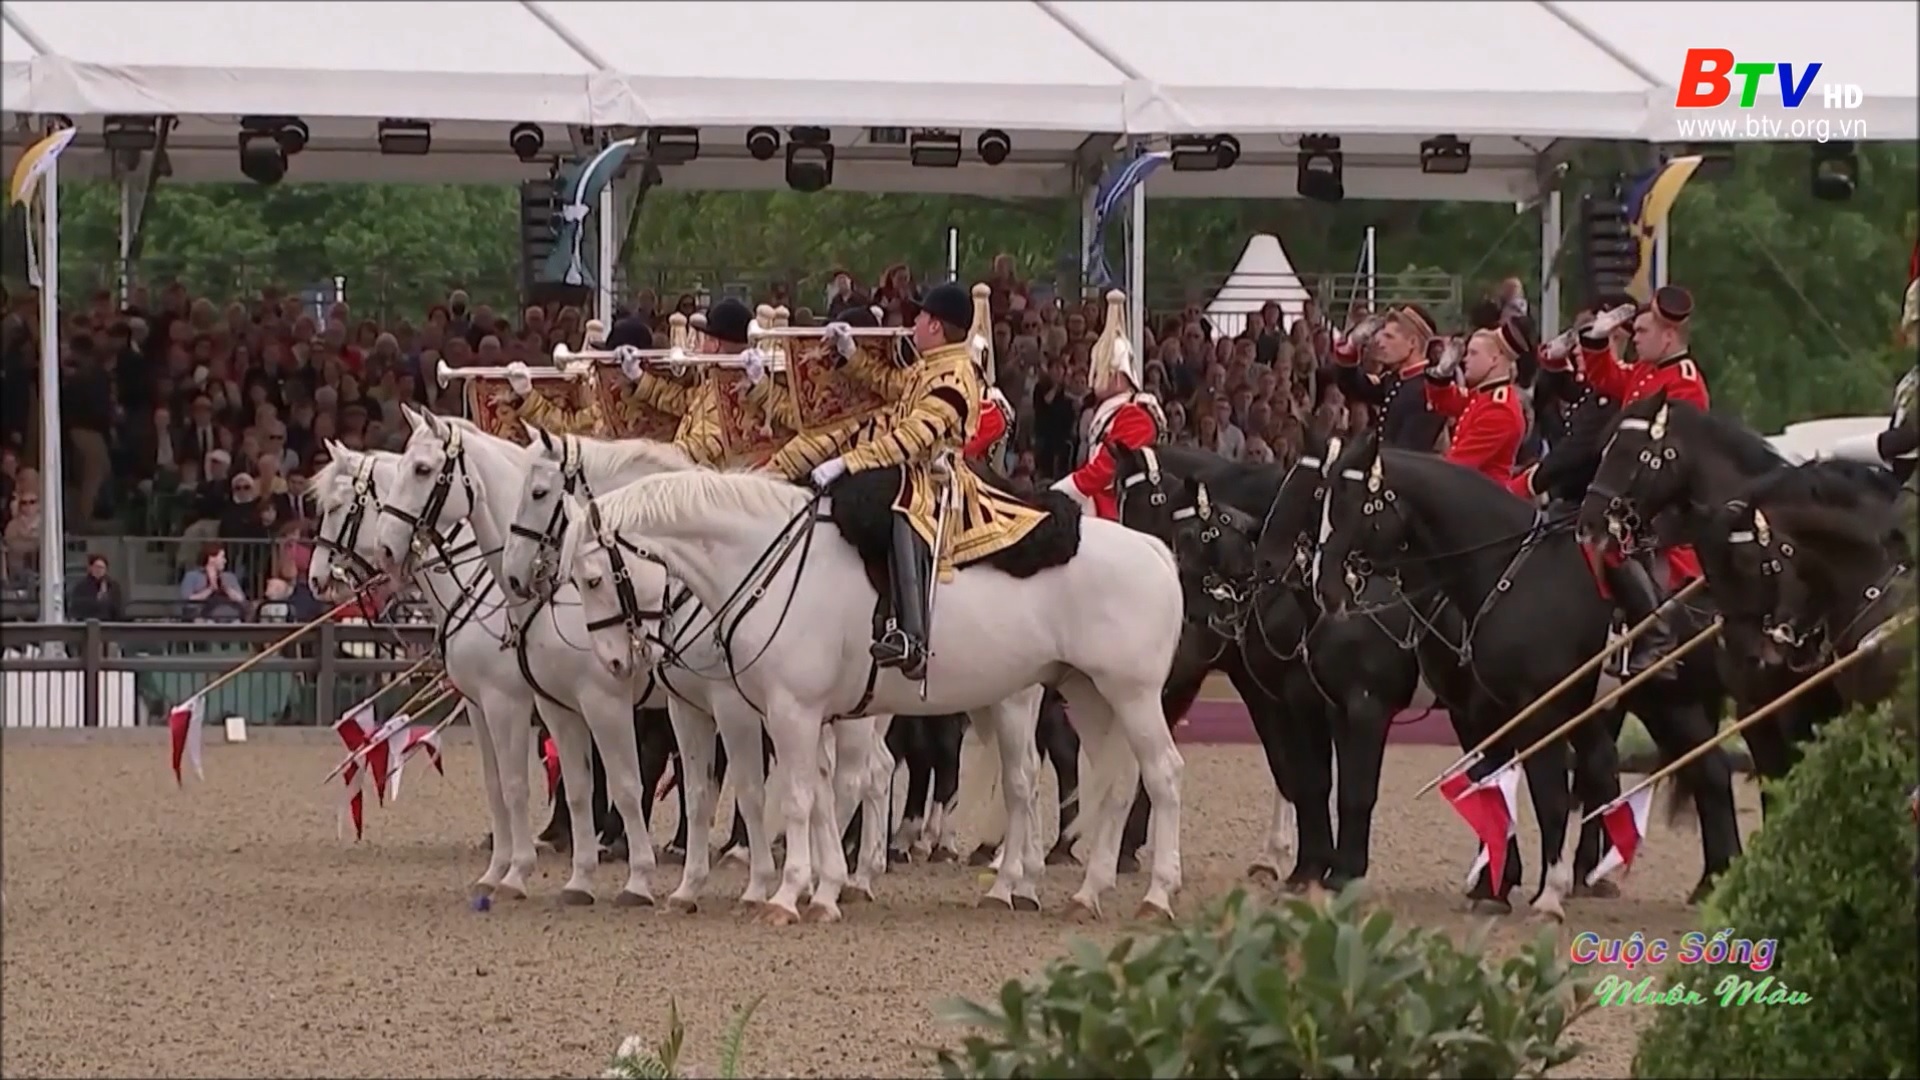 Buổi tổng duyệt cuối cùng Lễ kỷ niệm Bạch kim của Nữ hoàng Elizabeth II